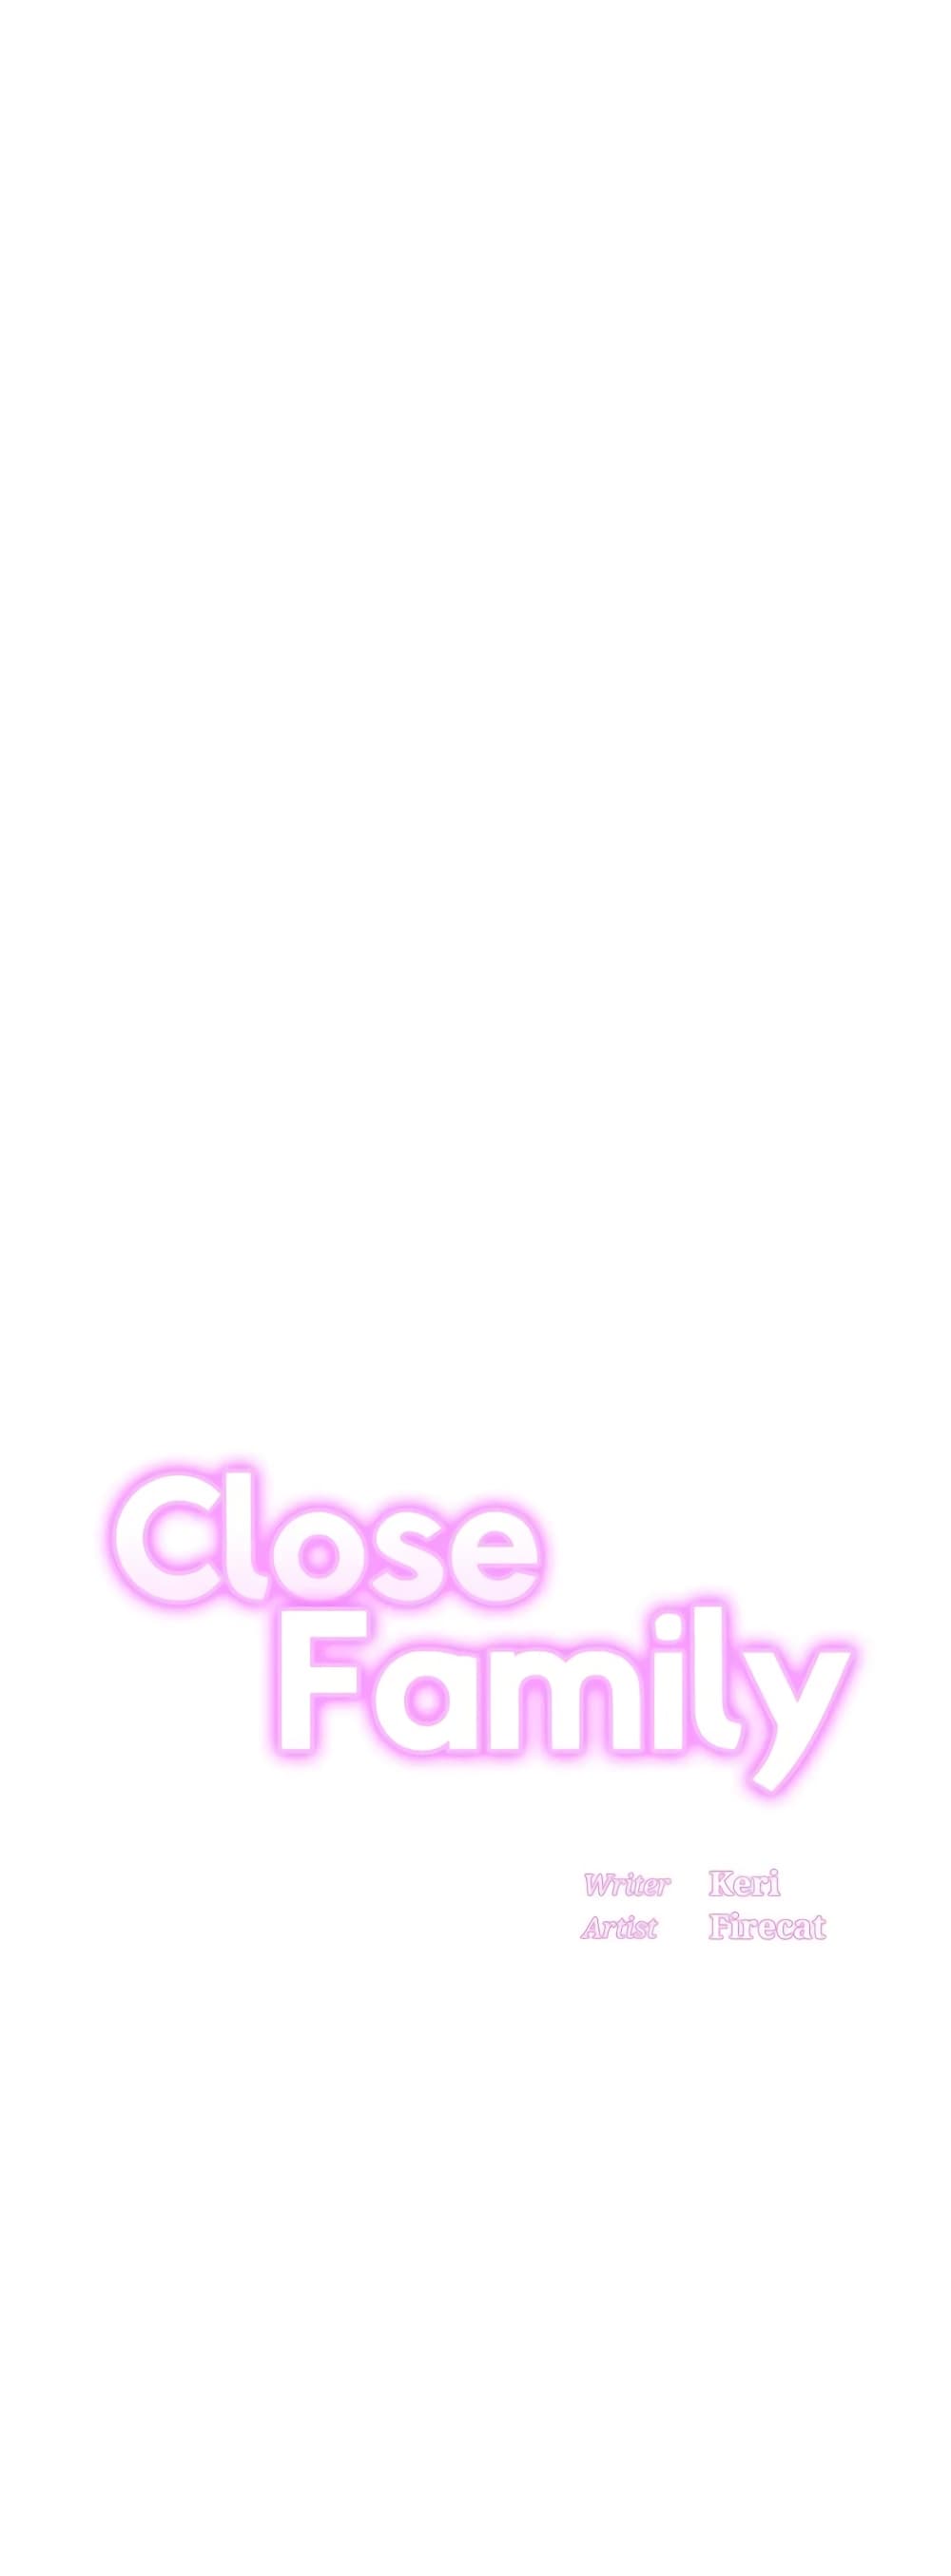 Close Family01